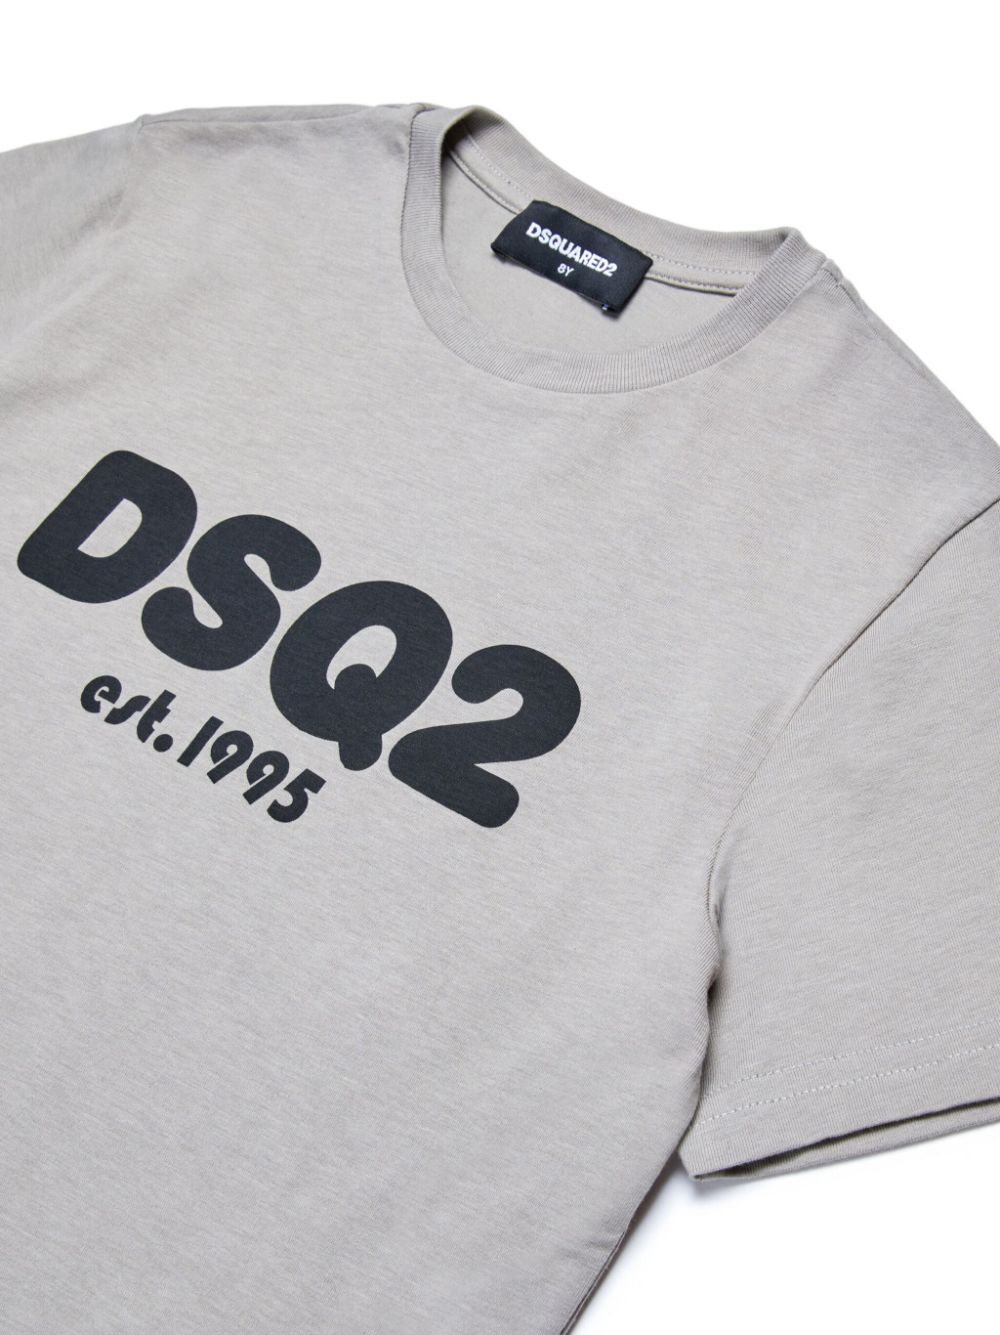 Dsquared2 Kids T-shirt met logoprint Grijs